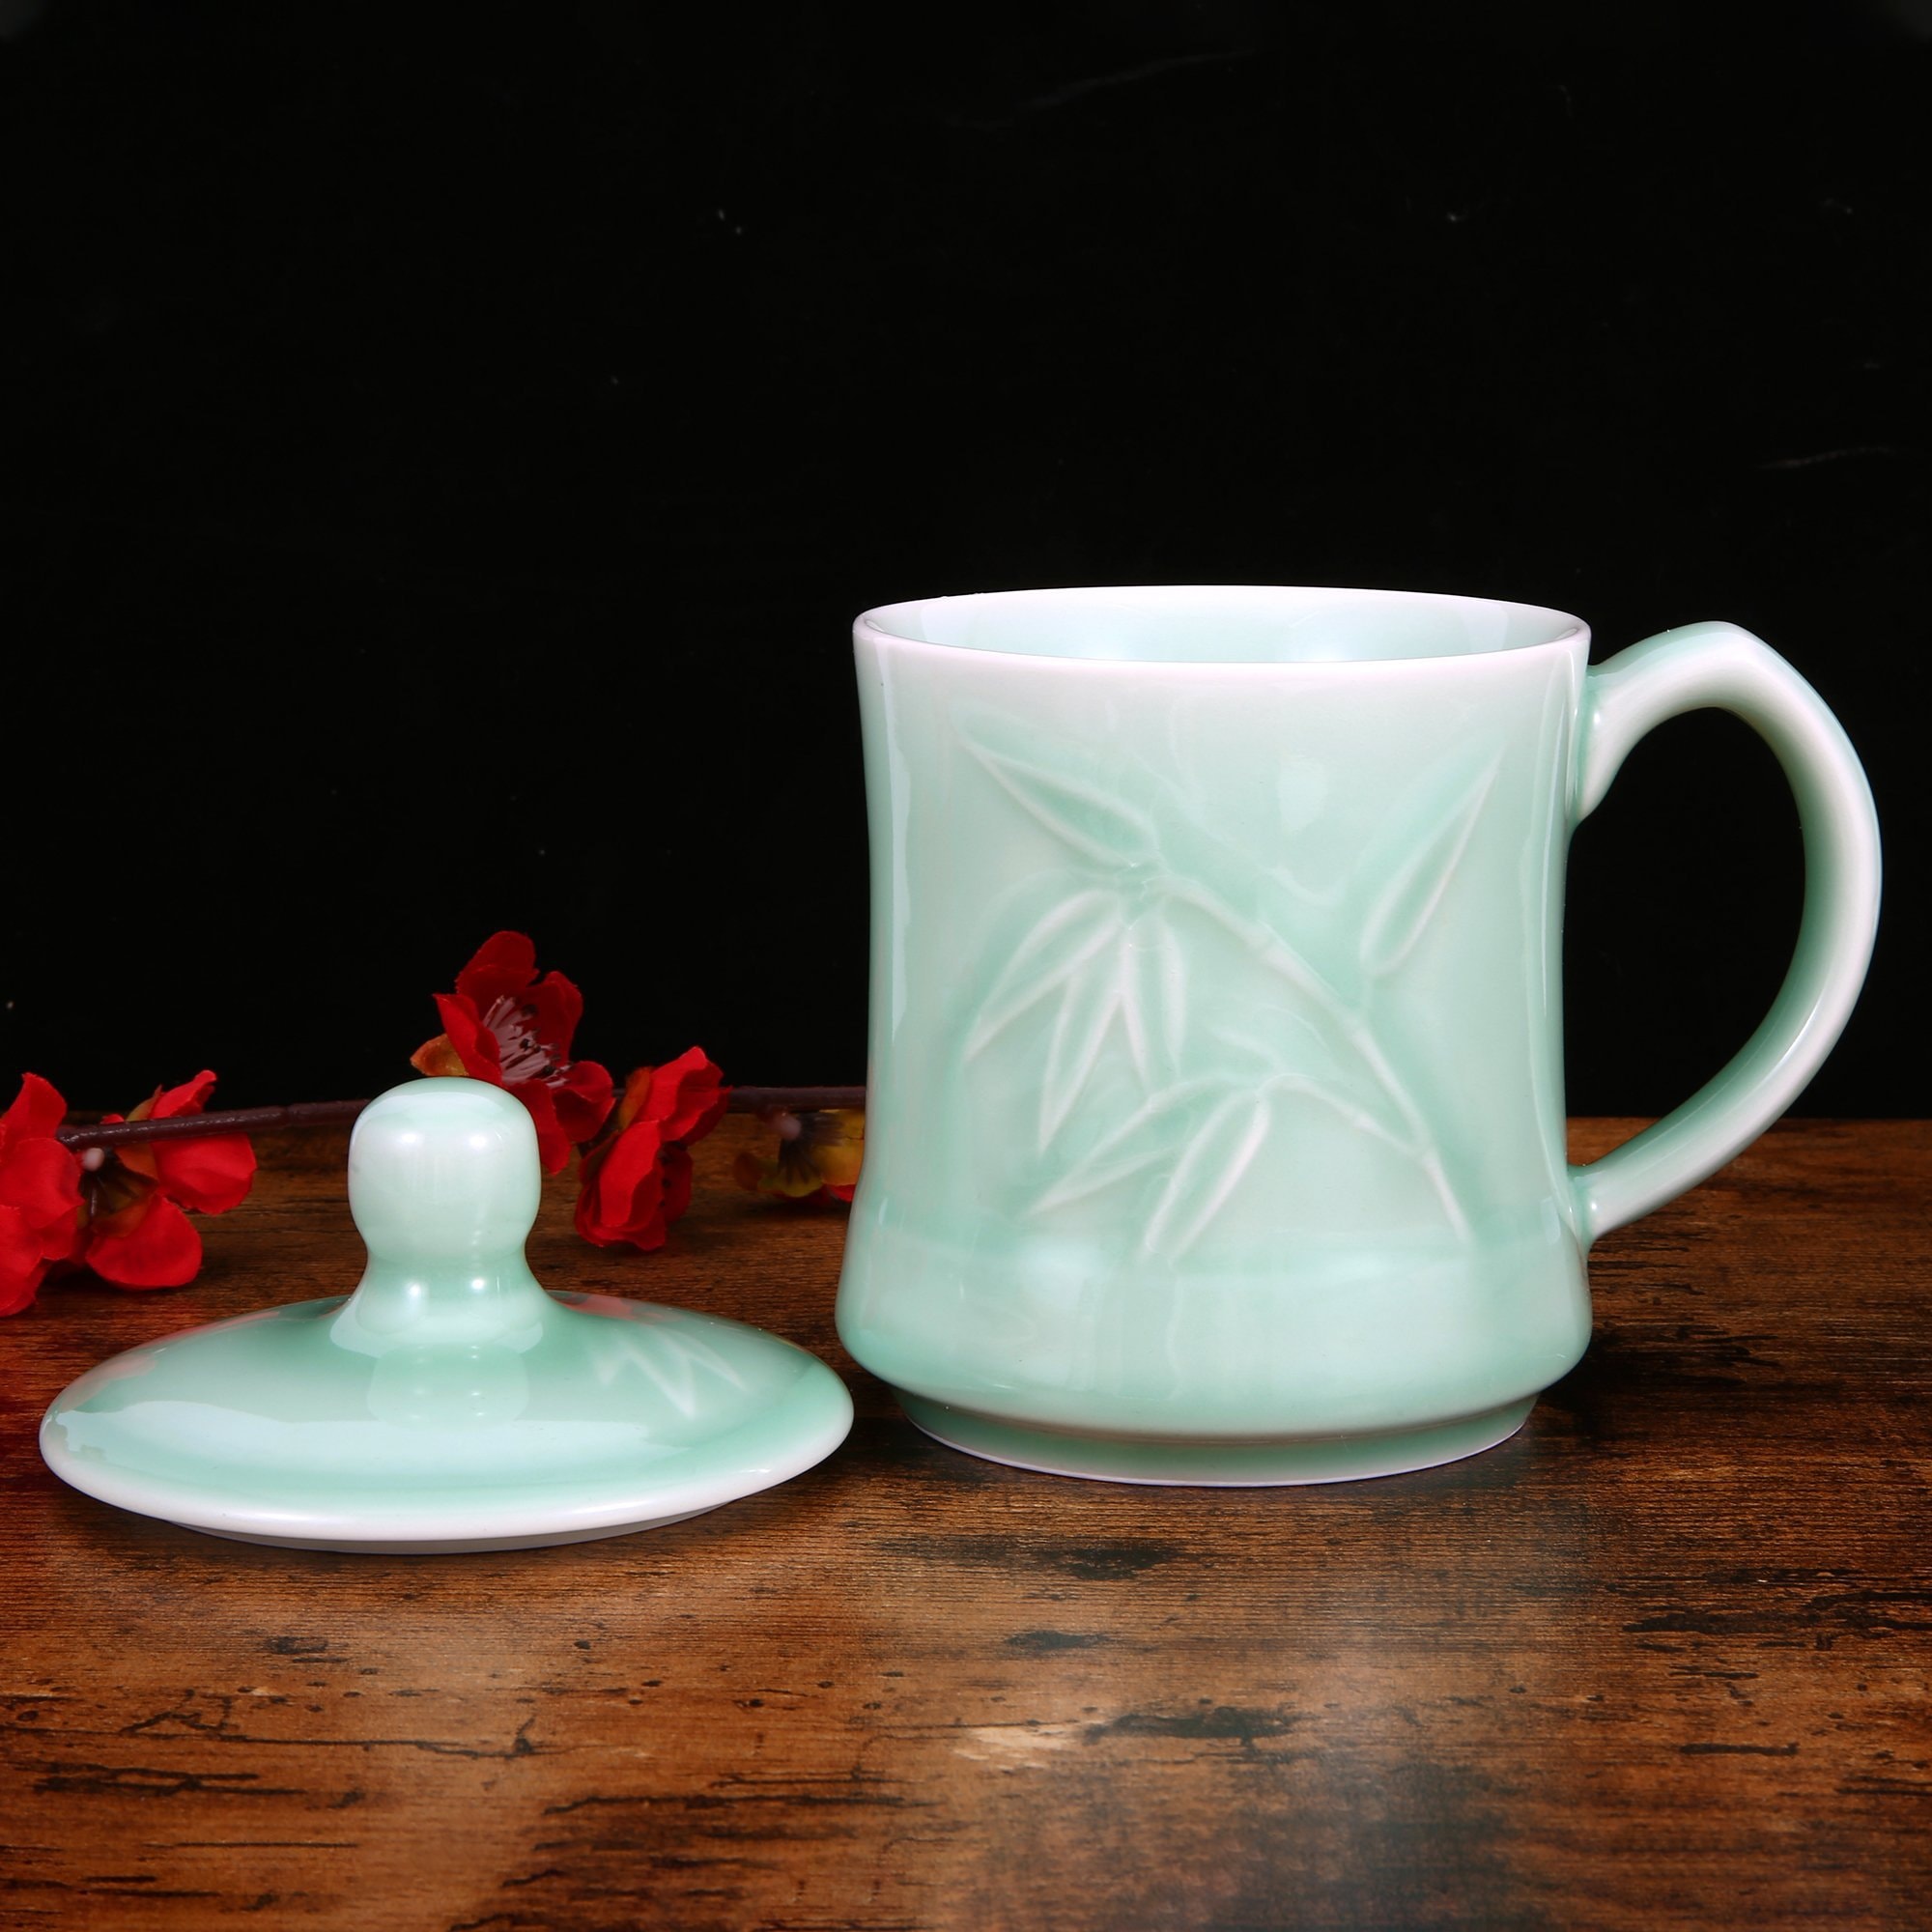 青花瓷茶杯 咖啡杯 牛奶杯 GREEN VALLEY青瓷带盖竹叶杯子礼盒 中国龙泉青瓷 世界非物质文化遗产 13盎司水杯 梅子青